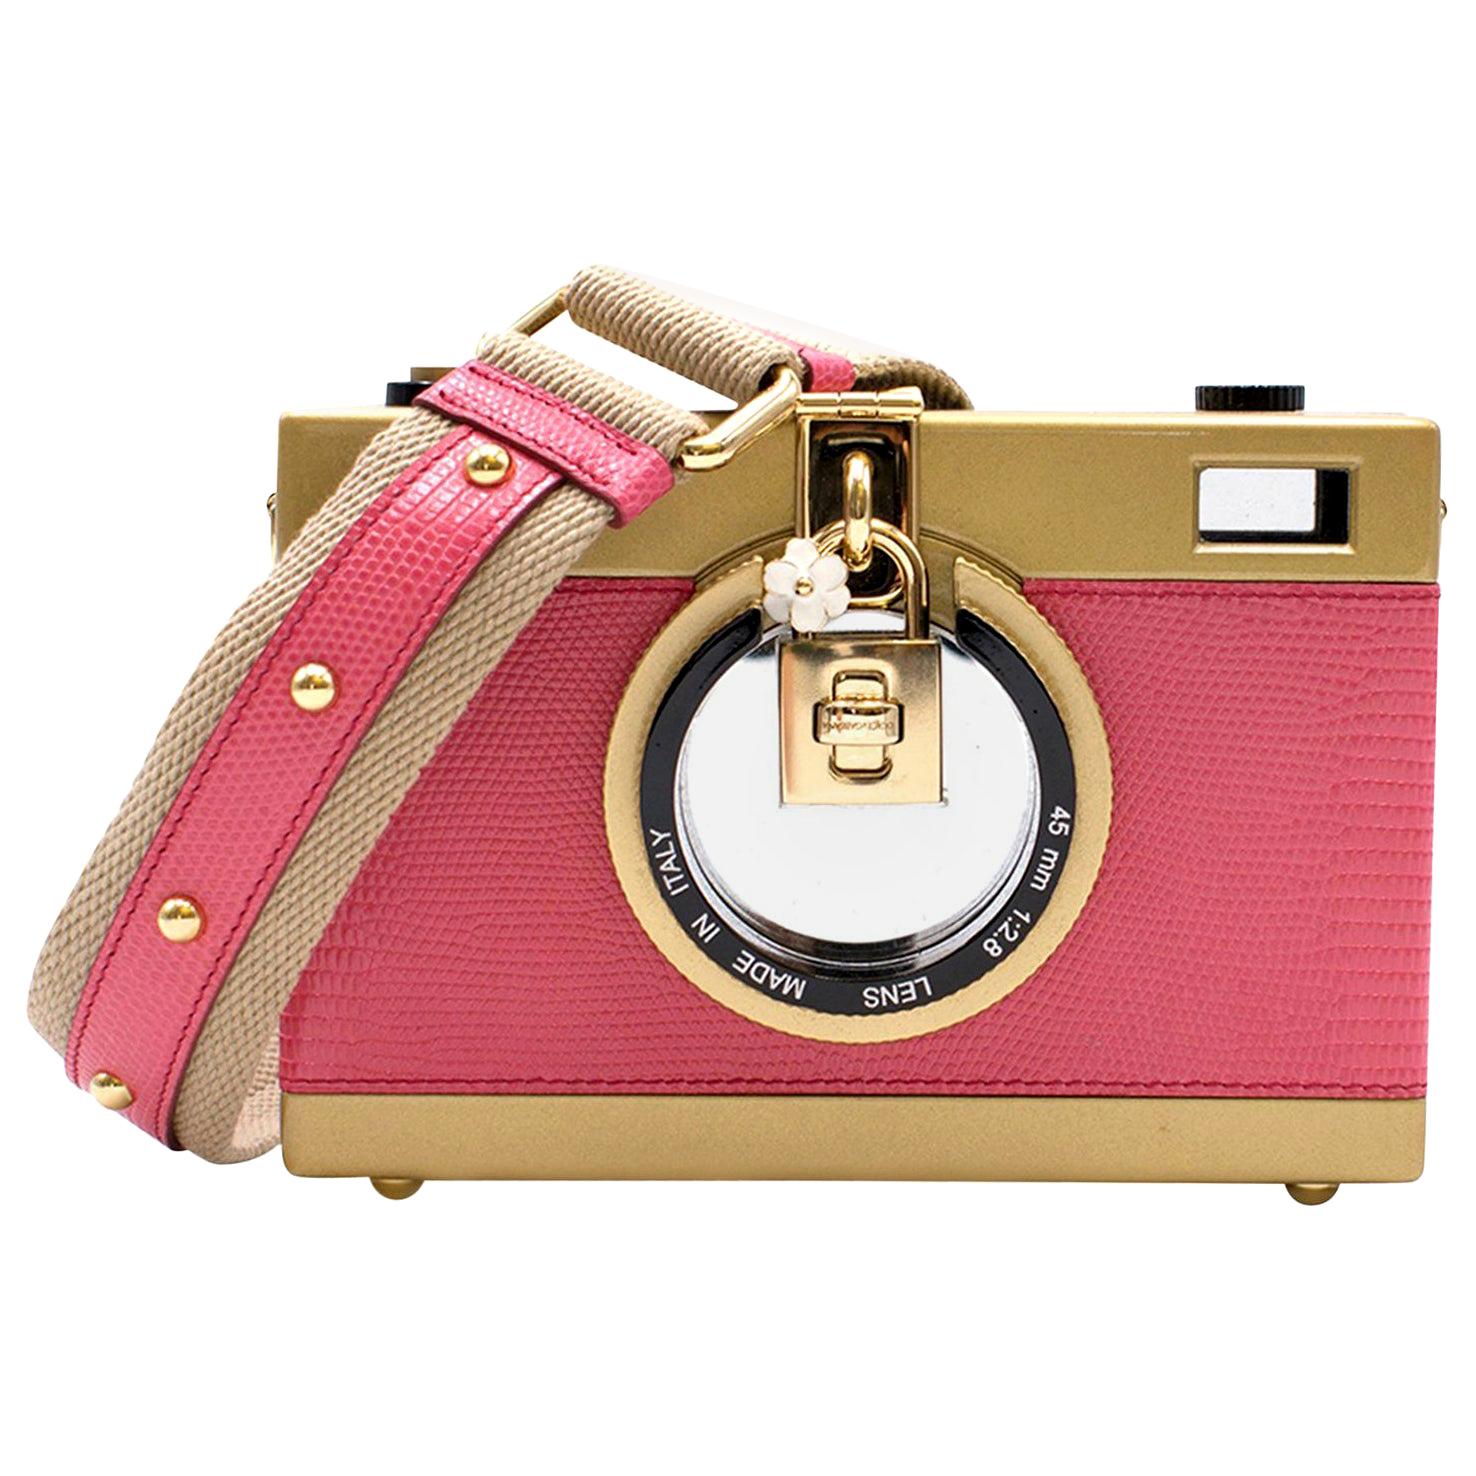 Dolce & Gabbana Camera Bag